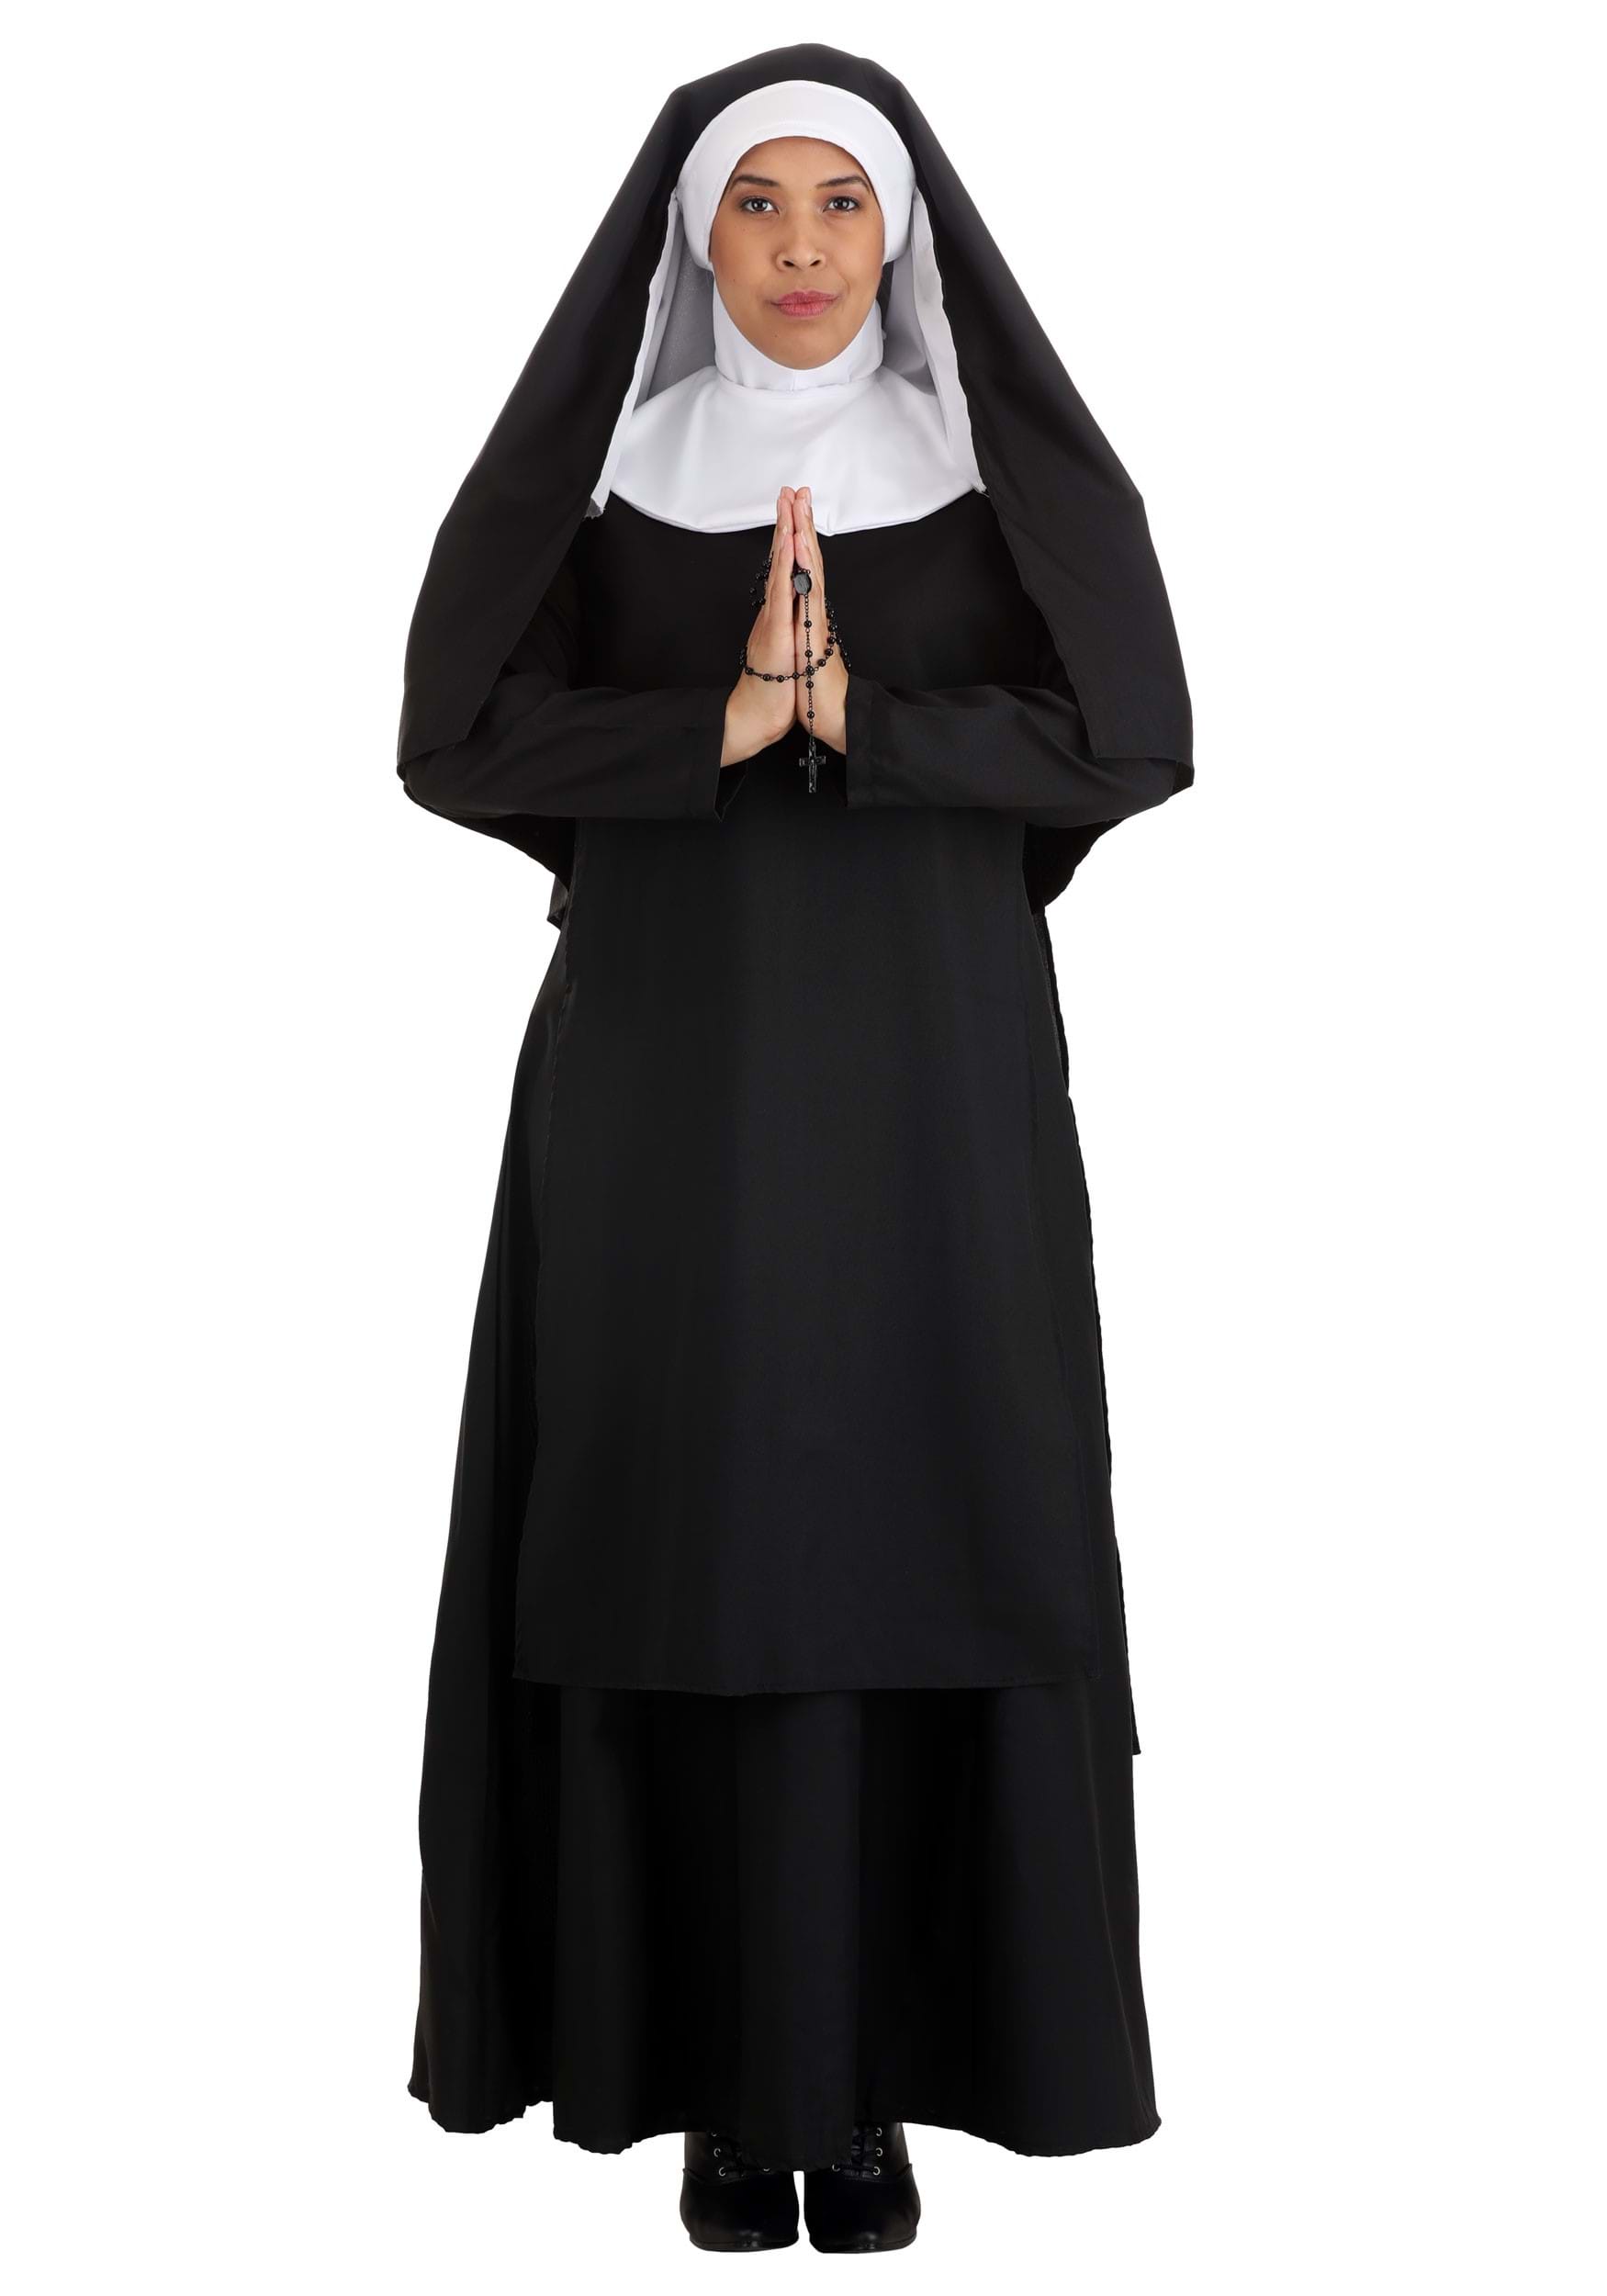 Top Totty Women's Deluxe Nun Costume 